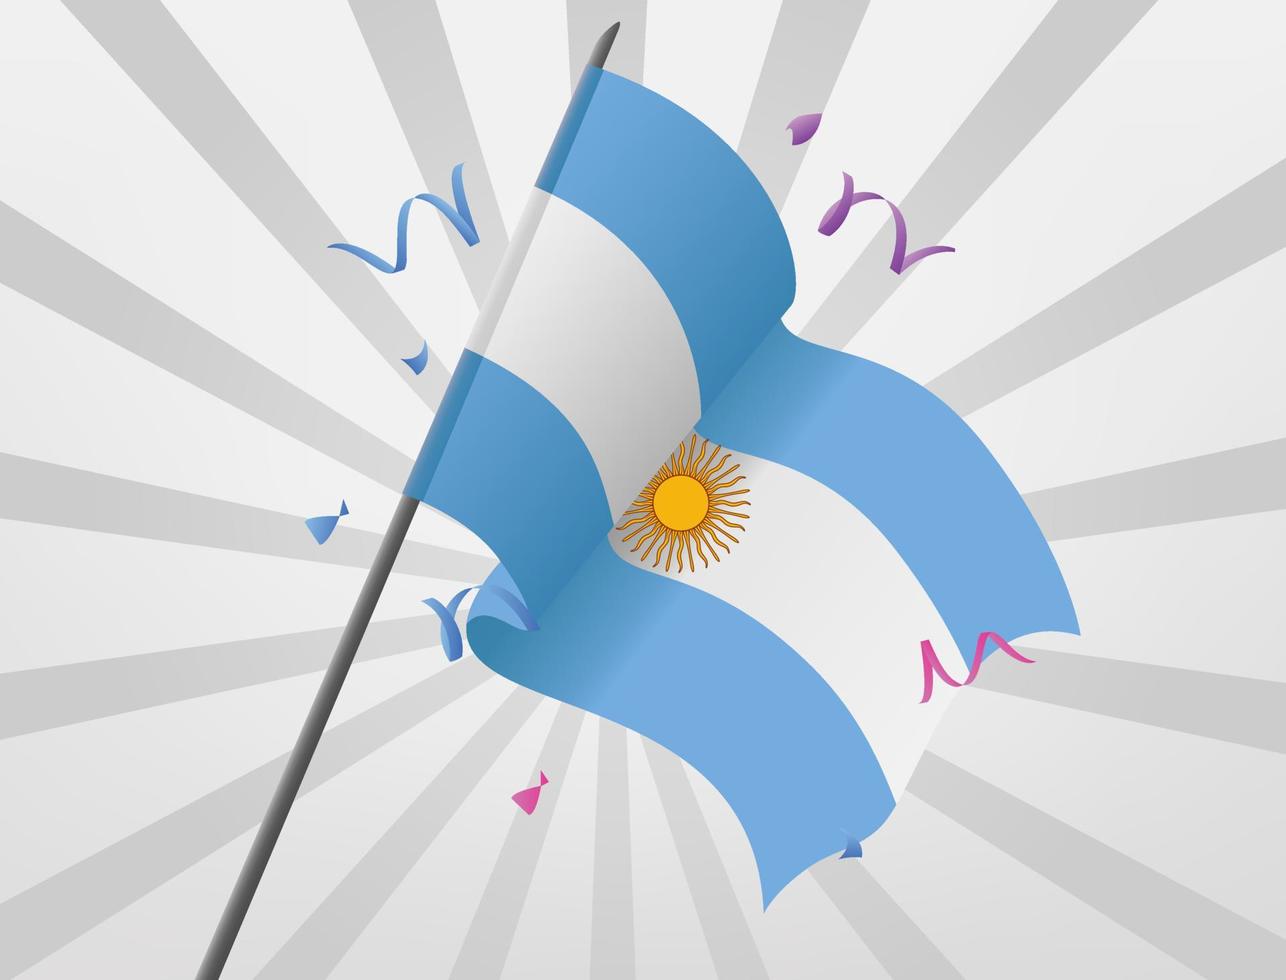 bandeiras comemorativas argentinas erguem-se em altas altitudes vetor